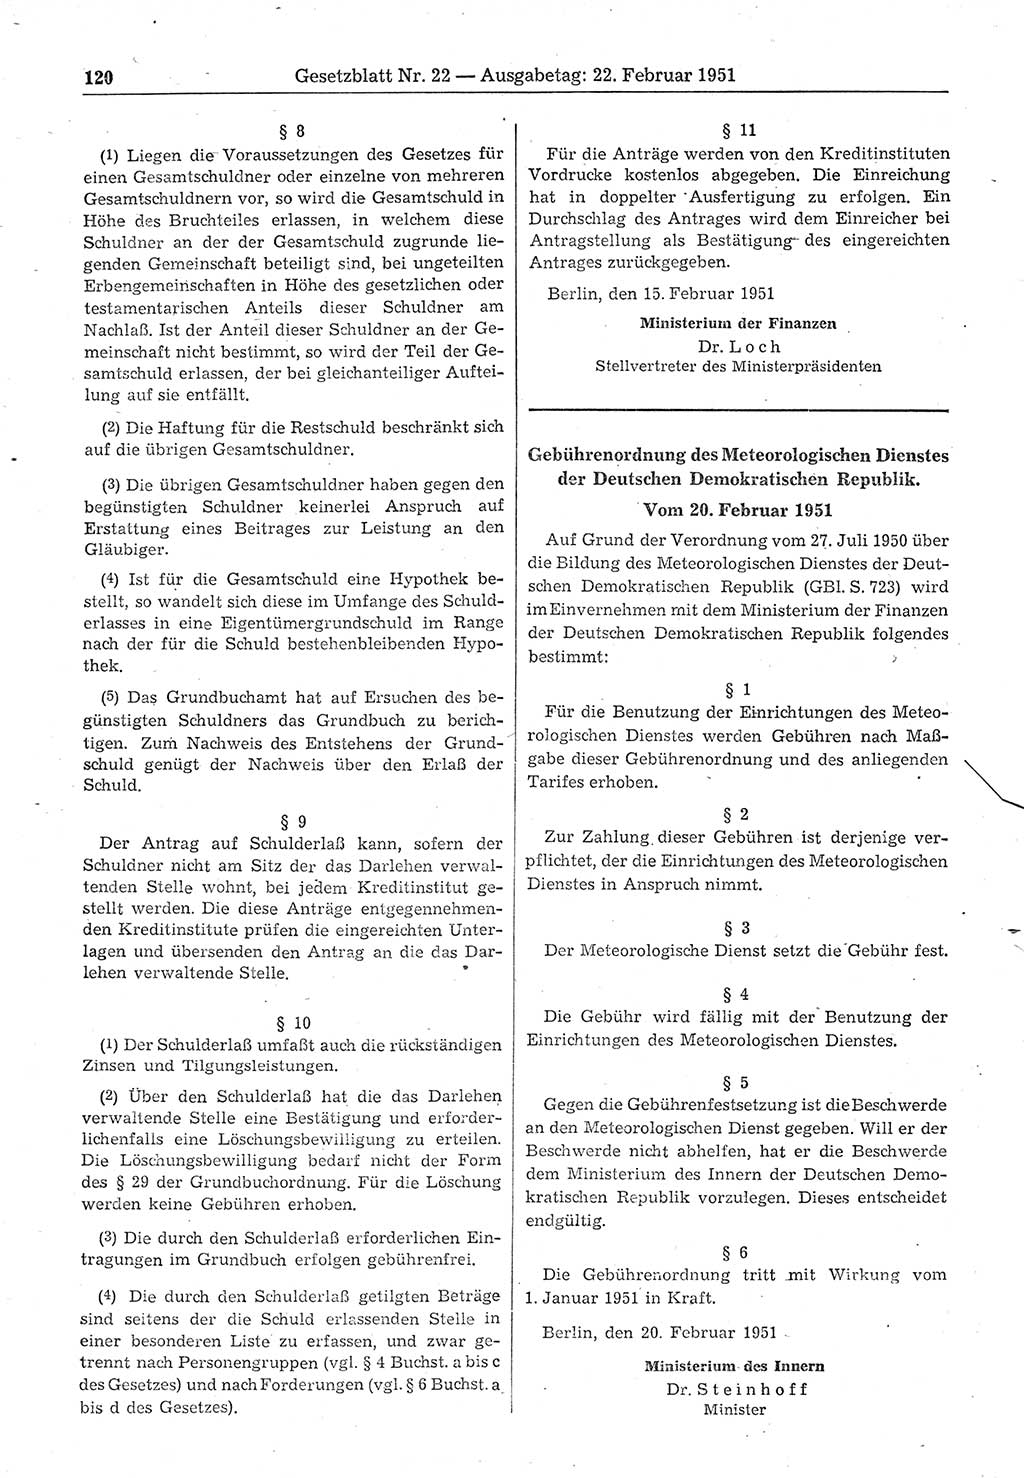 Gesetzblatt (GBl.) der Deutschen Demokratischen Republik (DDR) 1951, Seite 120 (GBl. DDR 1951, S. 120)